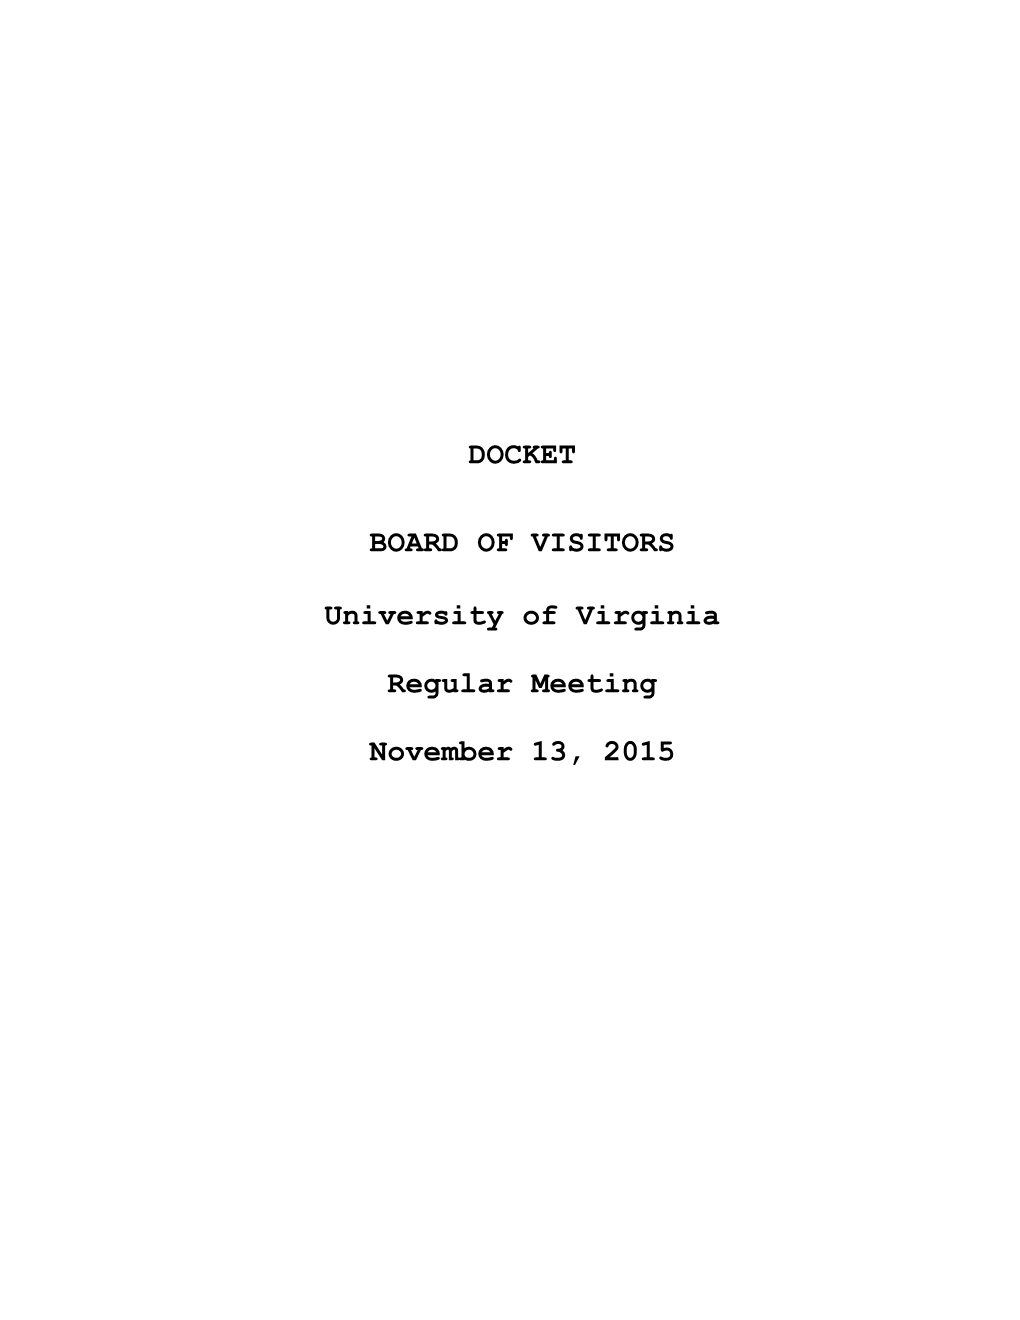 DOCKET BOARD of VISITORS University of Virginia Regular